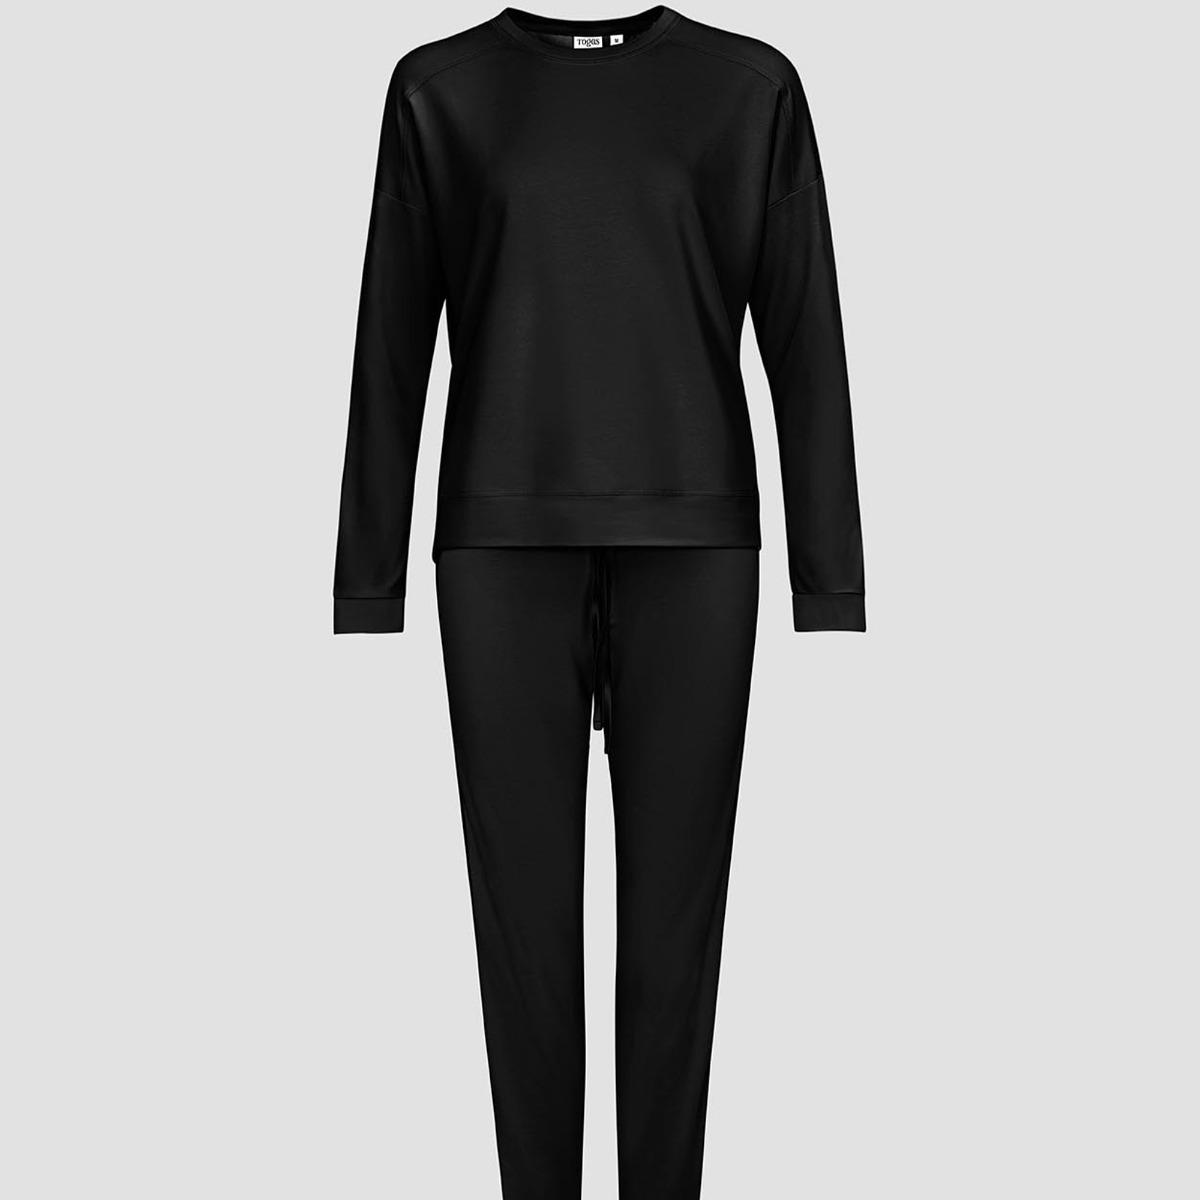 Женская пижама Togas Рене чёрная XL (50) пижама togas рене серая женская xs 42